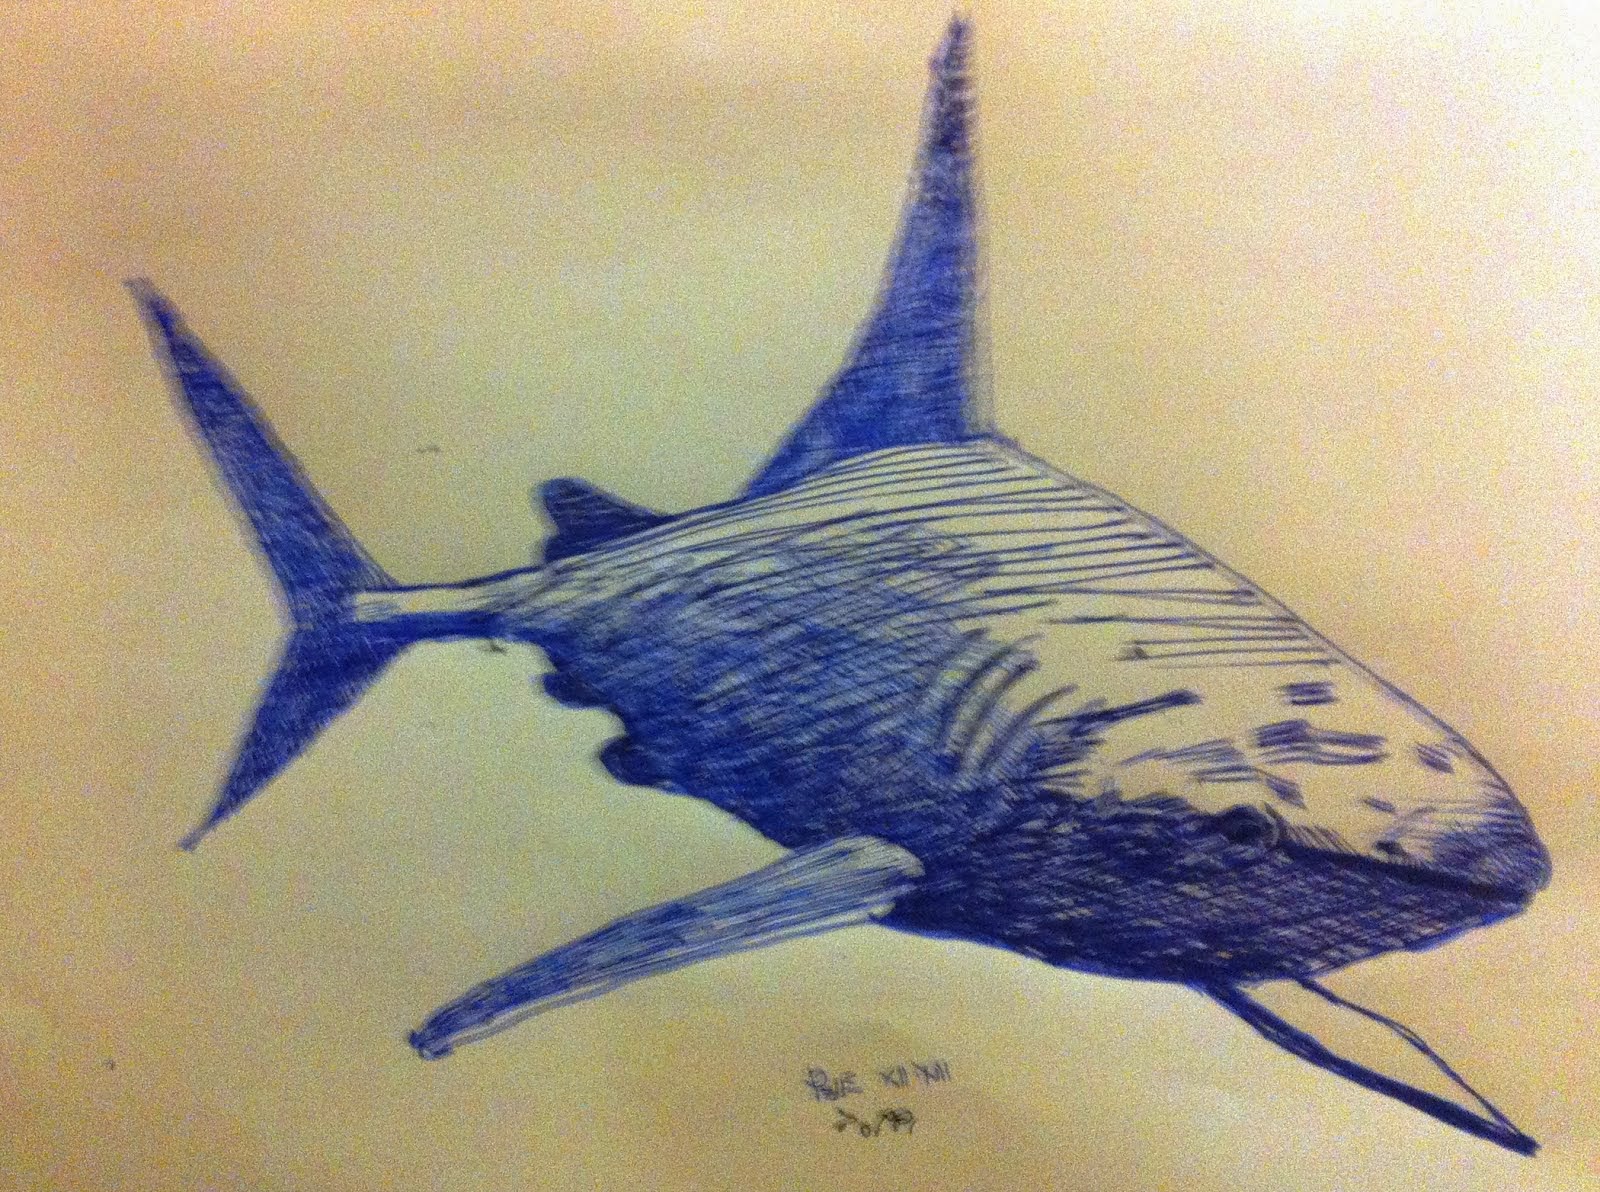 Blu Shark - Toppi (Inchiostro Stilo)